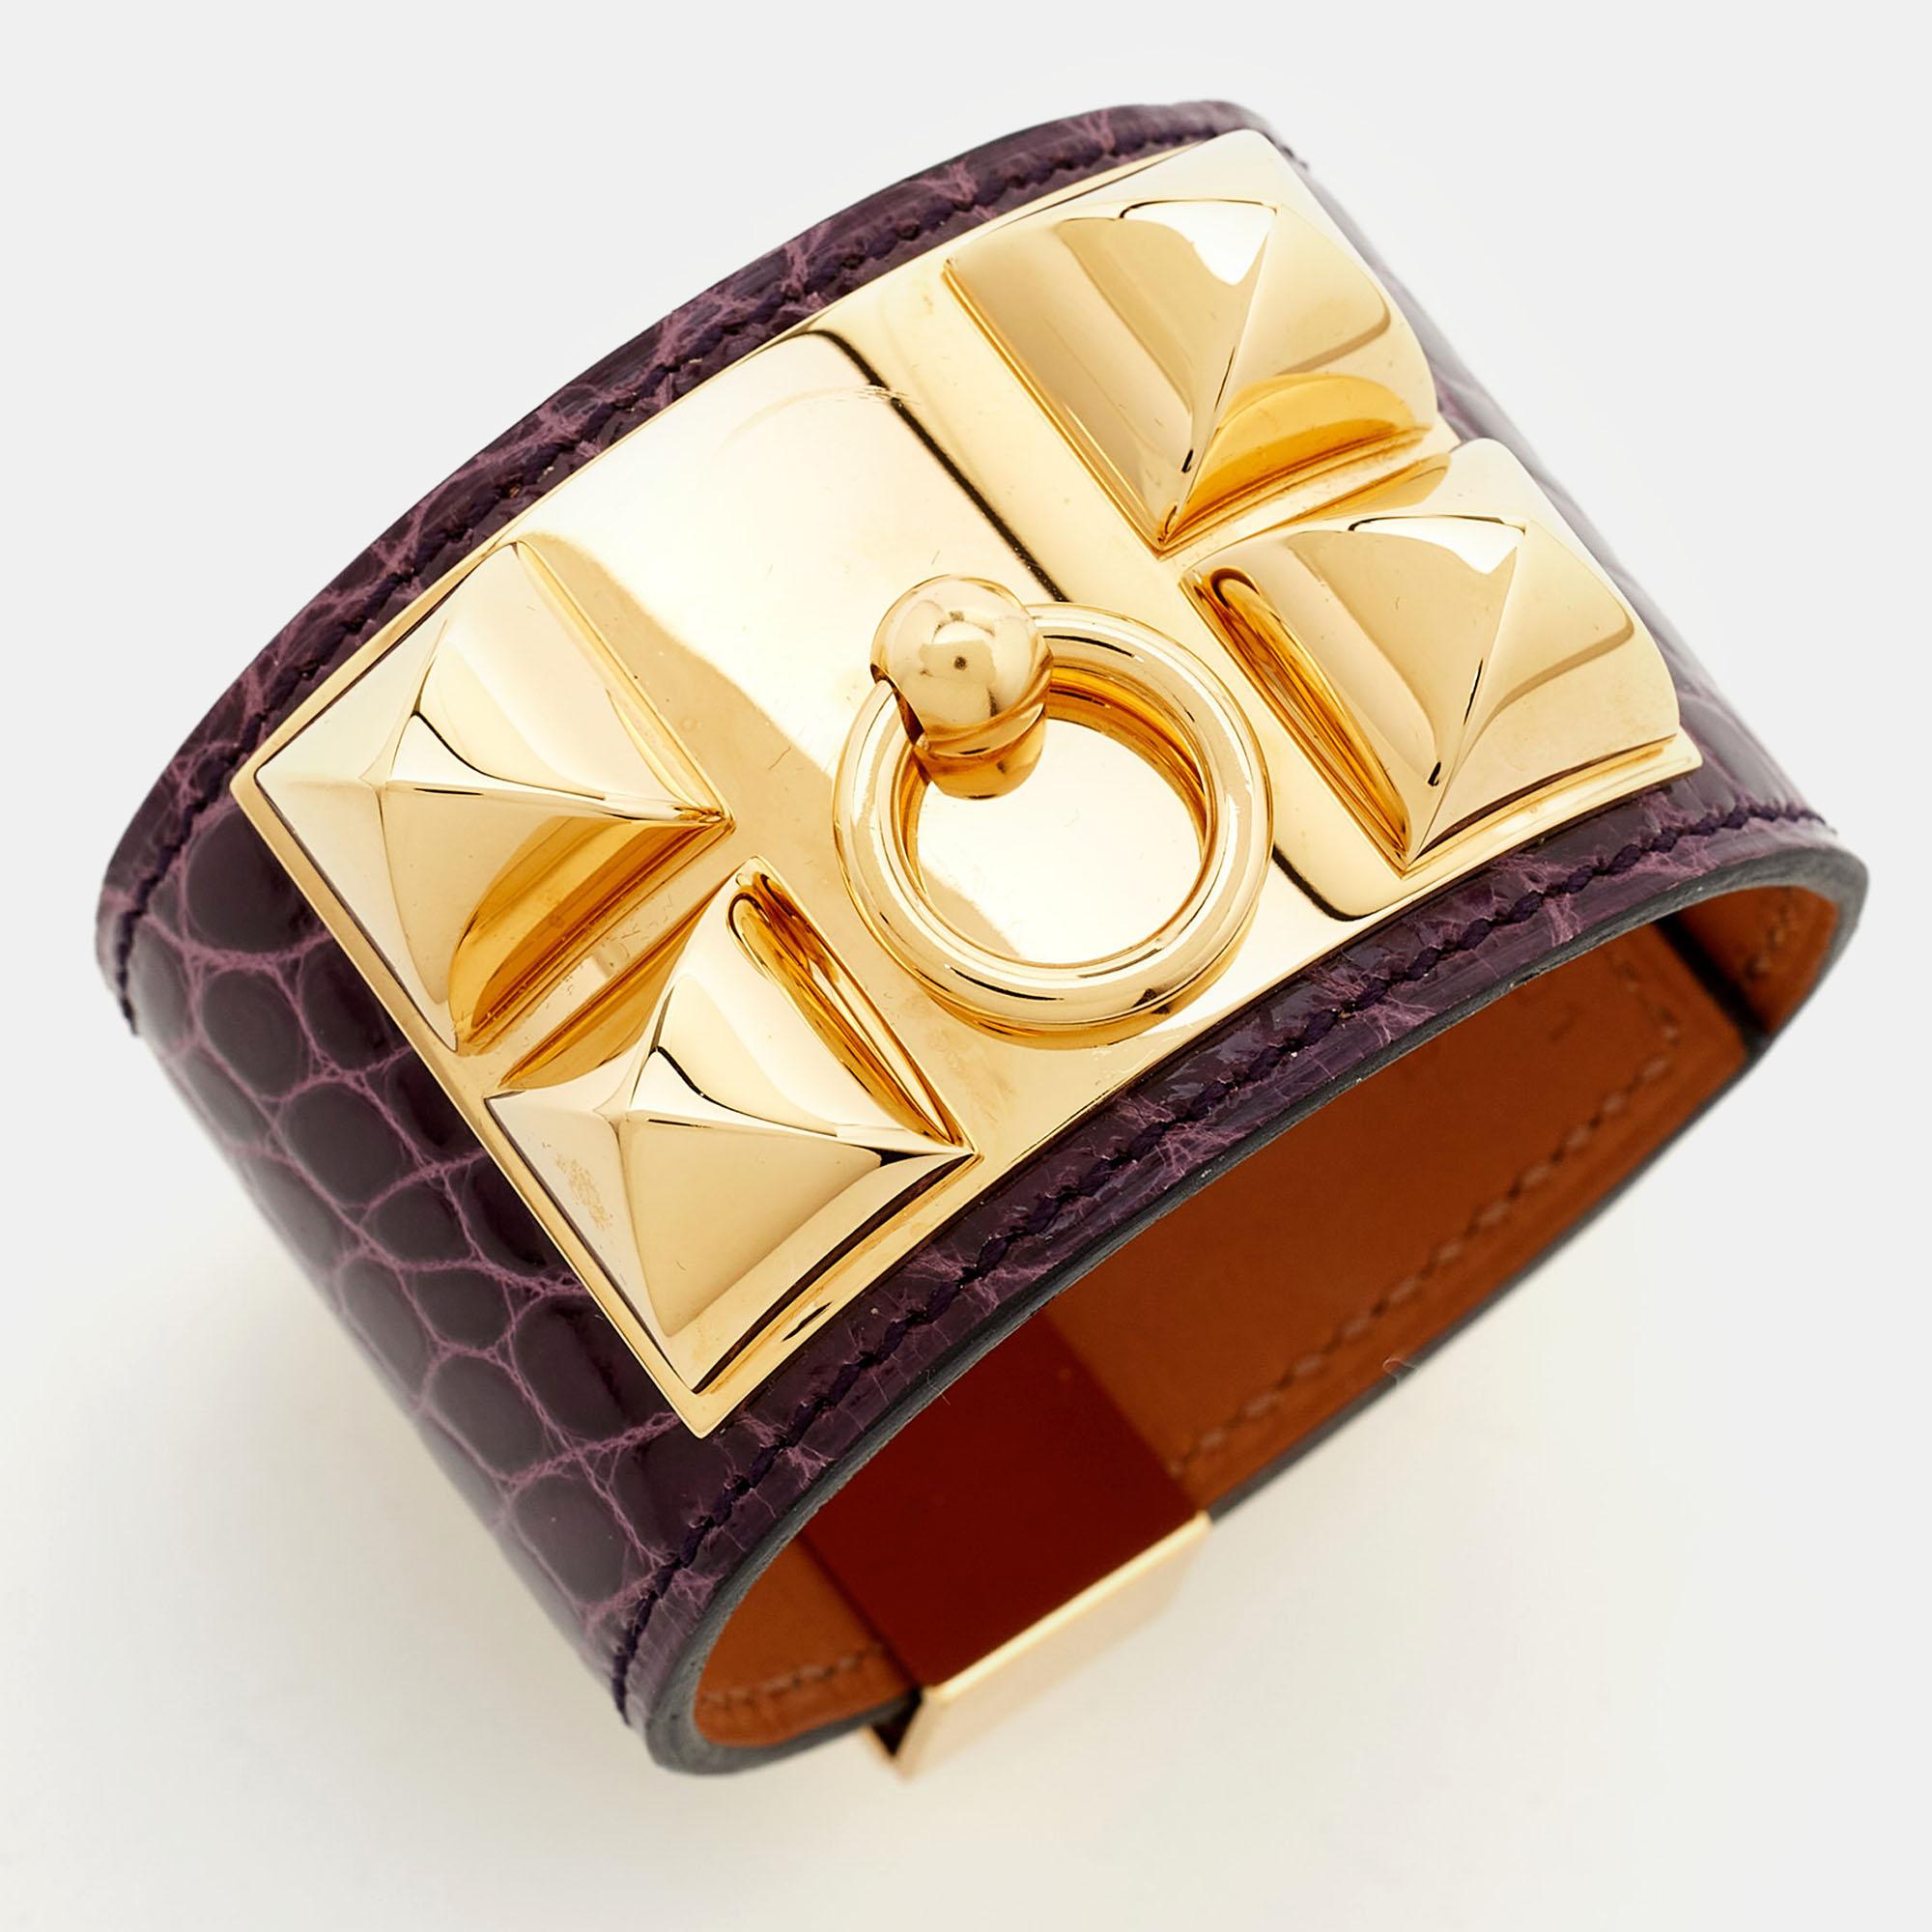 Hermes Collier De Chien Alligator Leather Gold Plated Bracelet For Sale 3